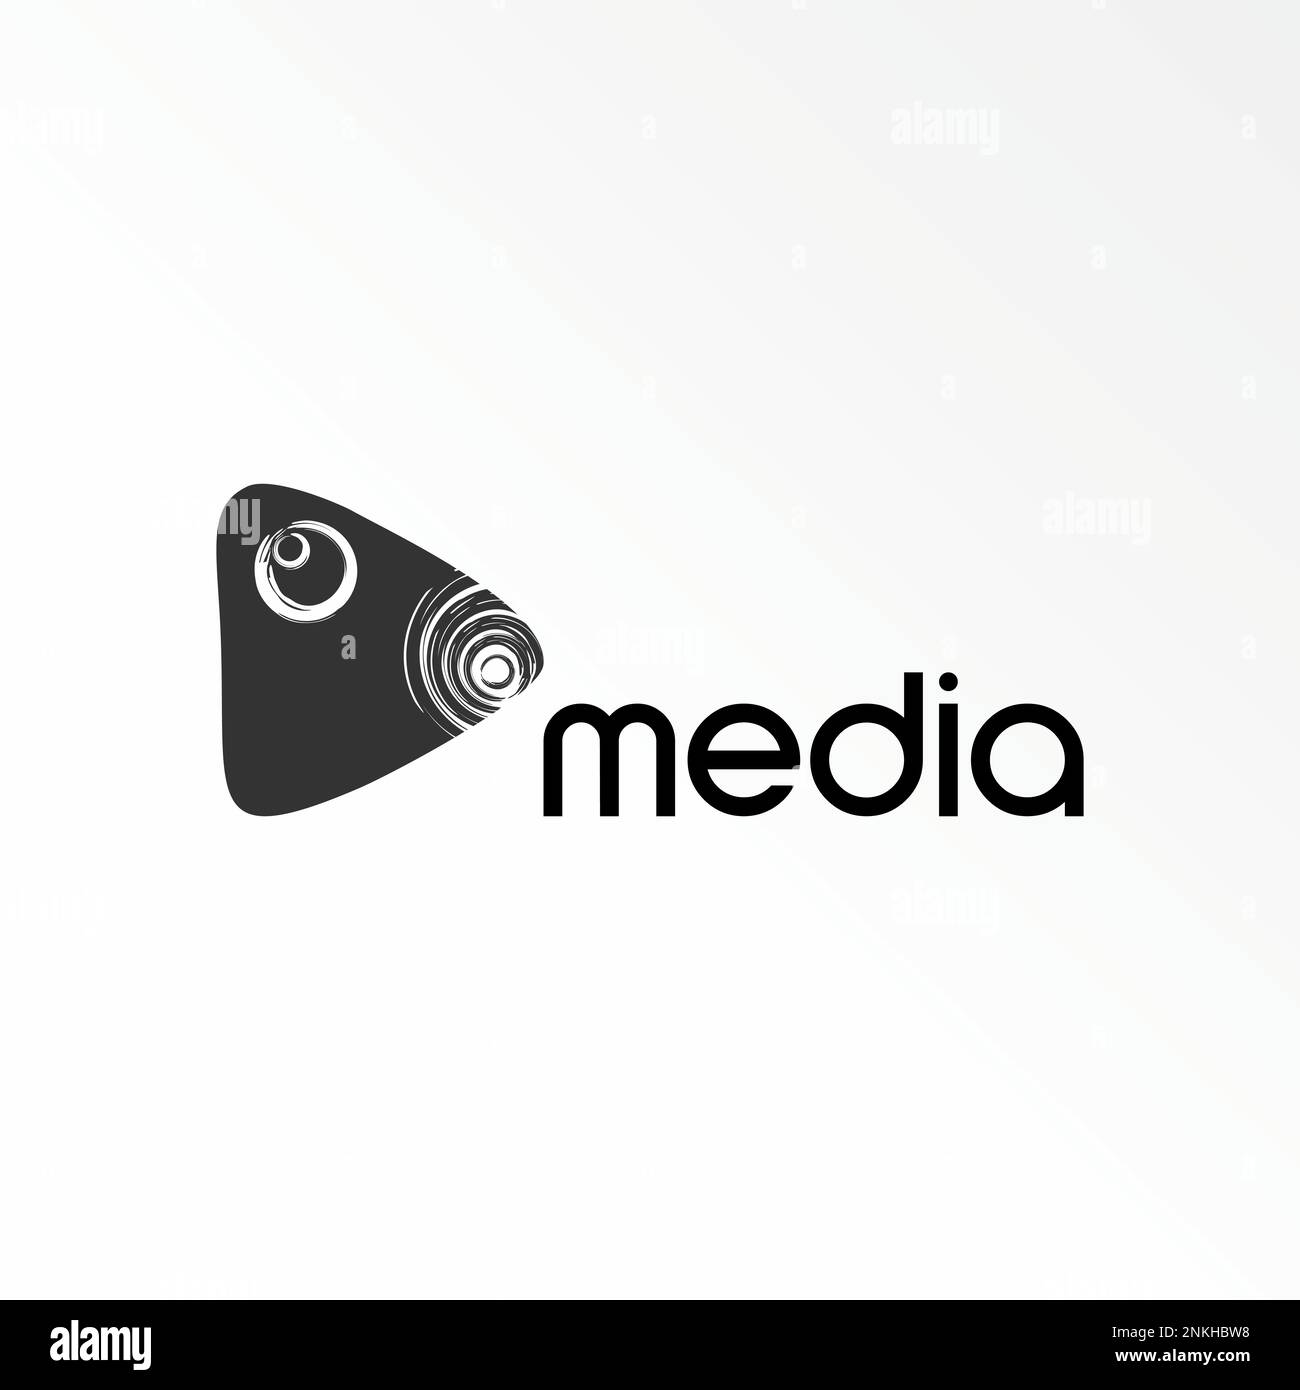 Einfaches und einzigartiges Taubenmaul mit Kratzlinie und Wiedergabe Videobild Grafiksymbol Logo Design abstraktes Konzept Vektormaterial Tier oder Medien Stock Vektor